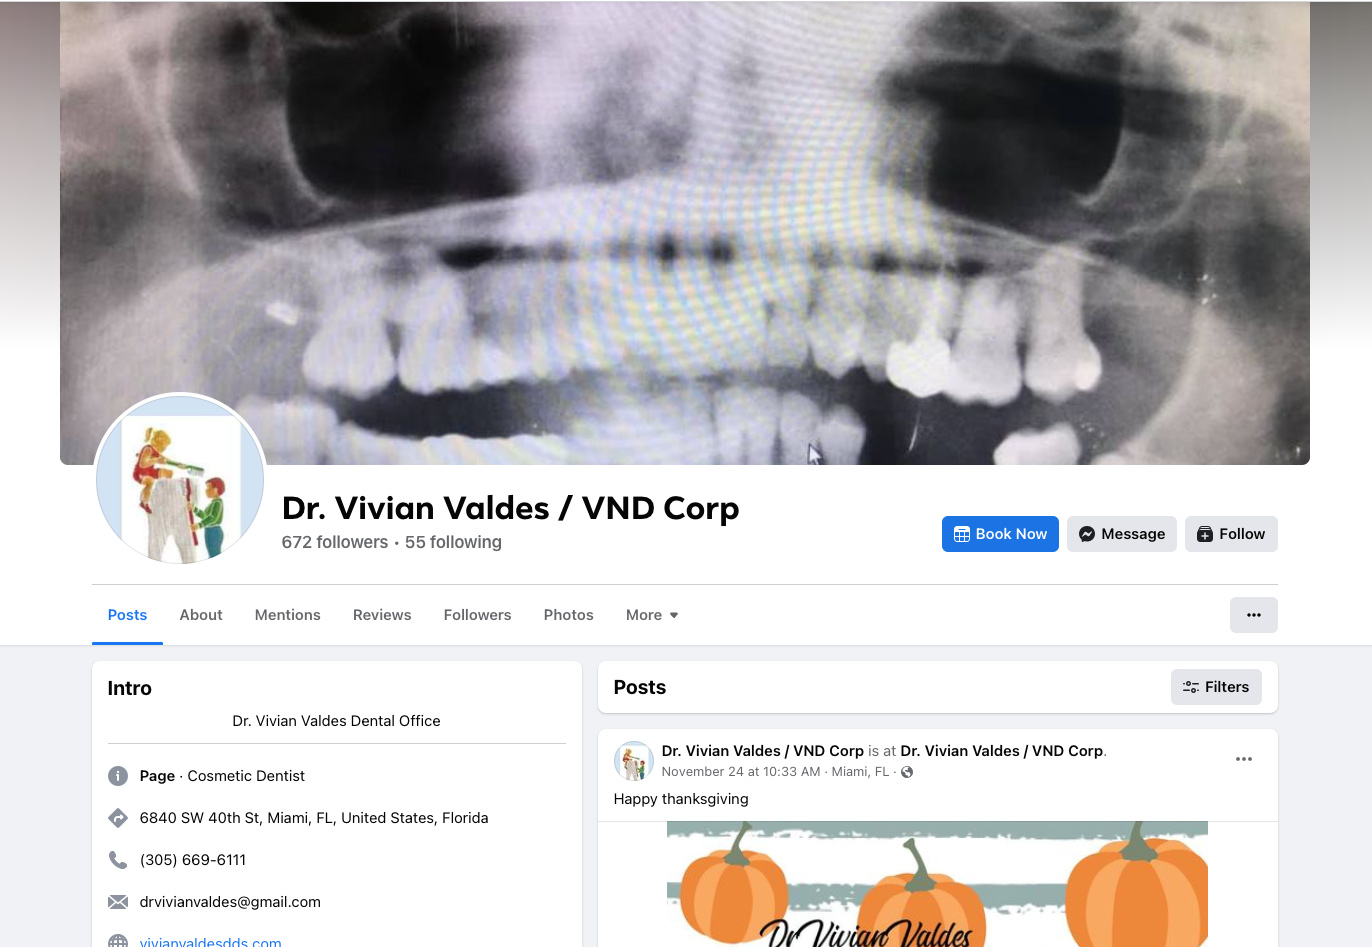 Dr. Vivian Valdes DDS on Facebook